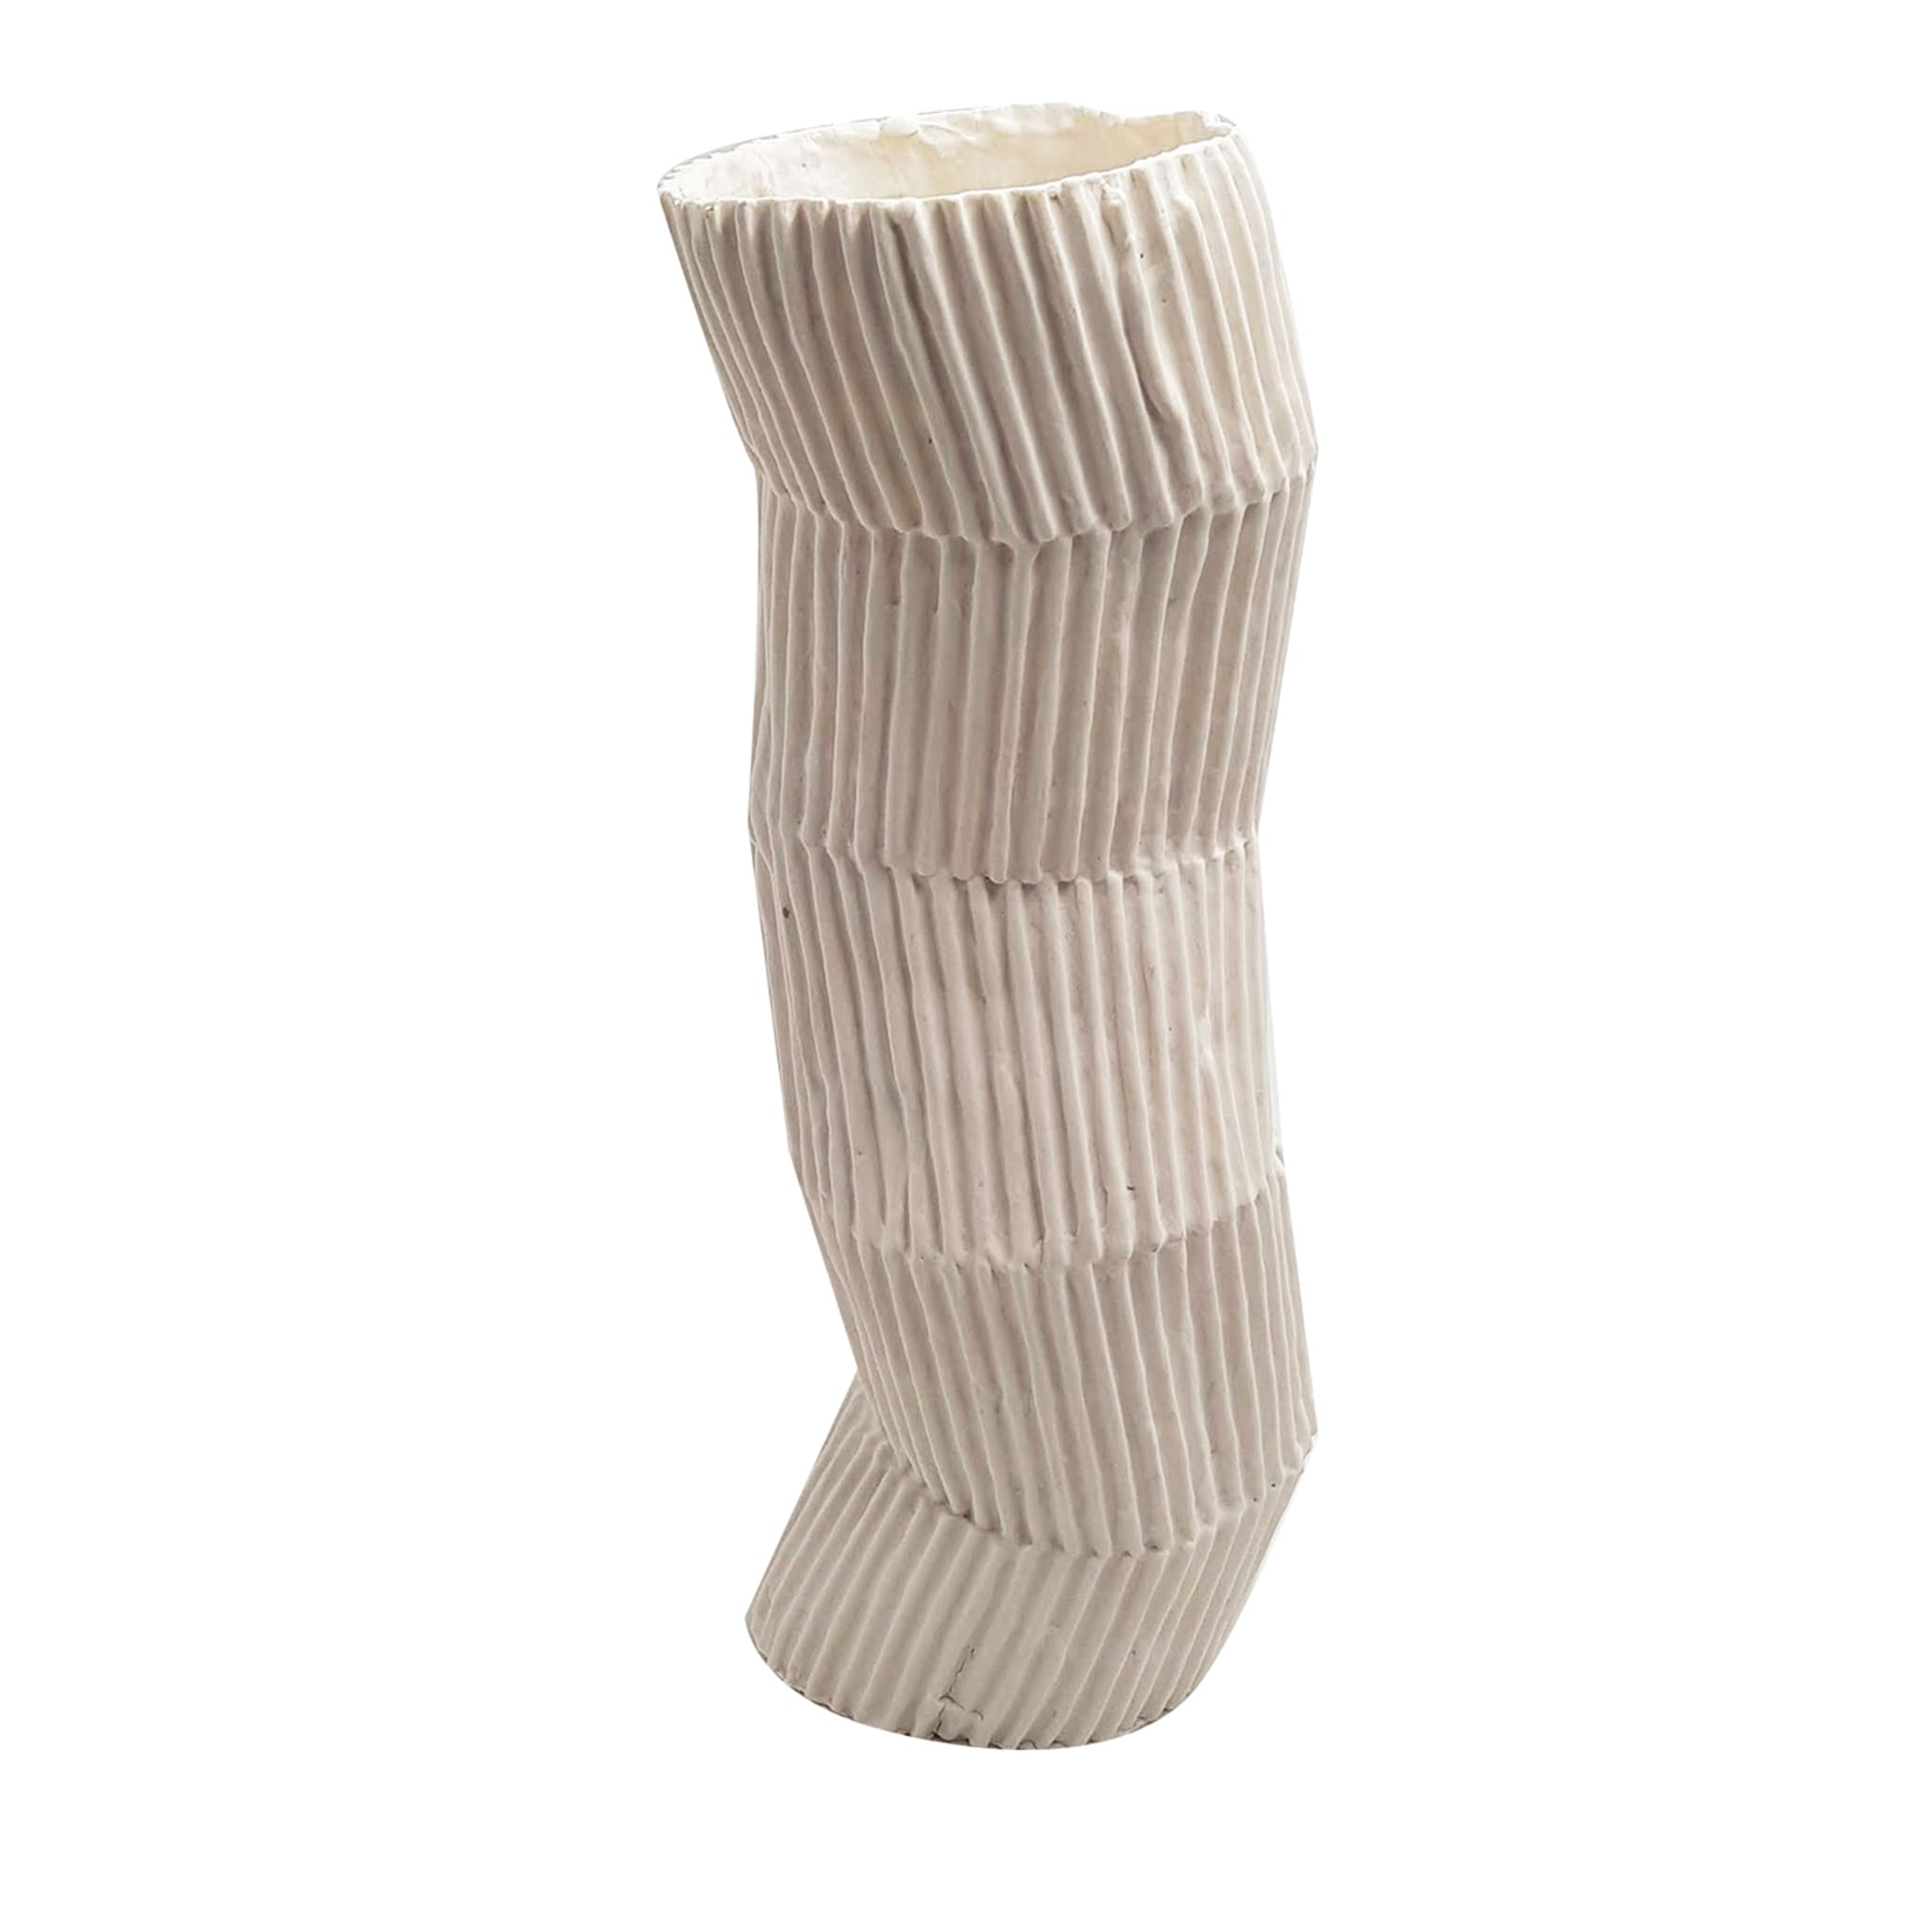 Le Torrette Weiße Pappmaché-Vase von Nino Basso #1 - Hauptansicht